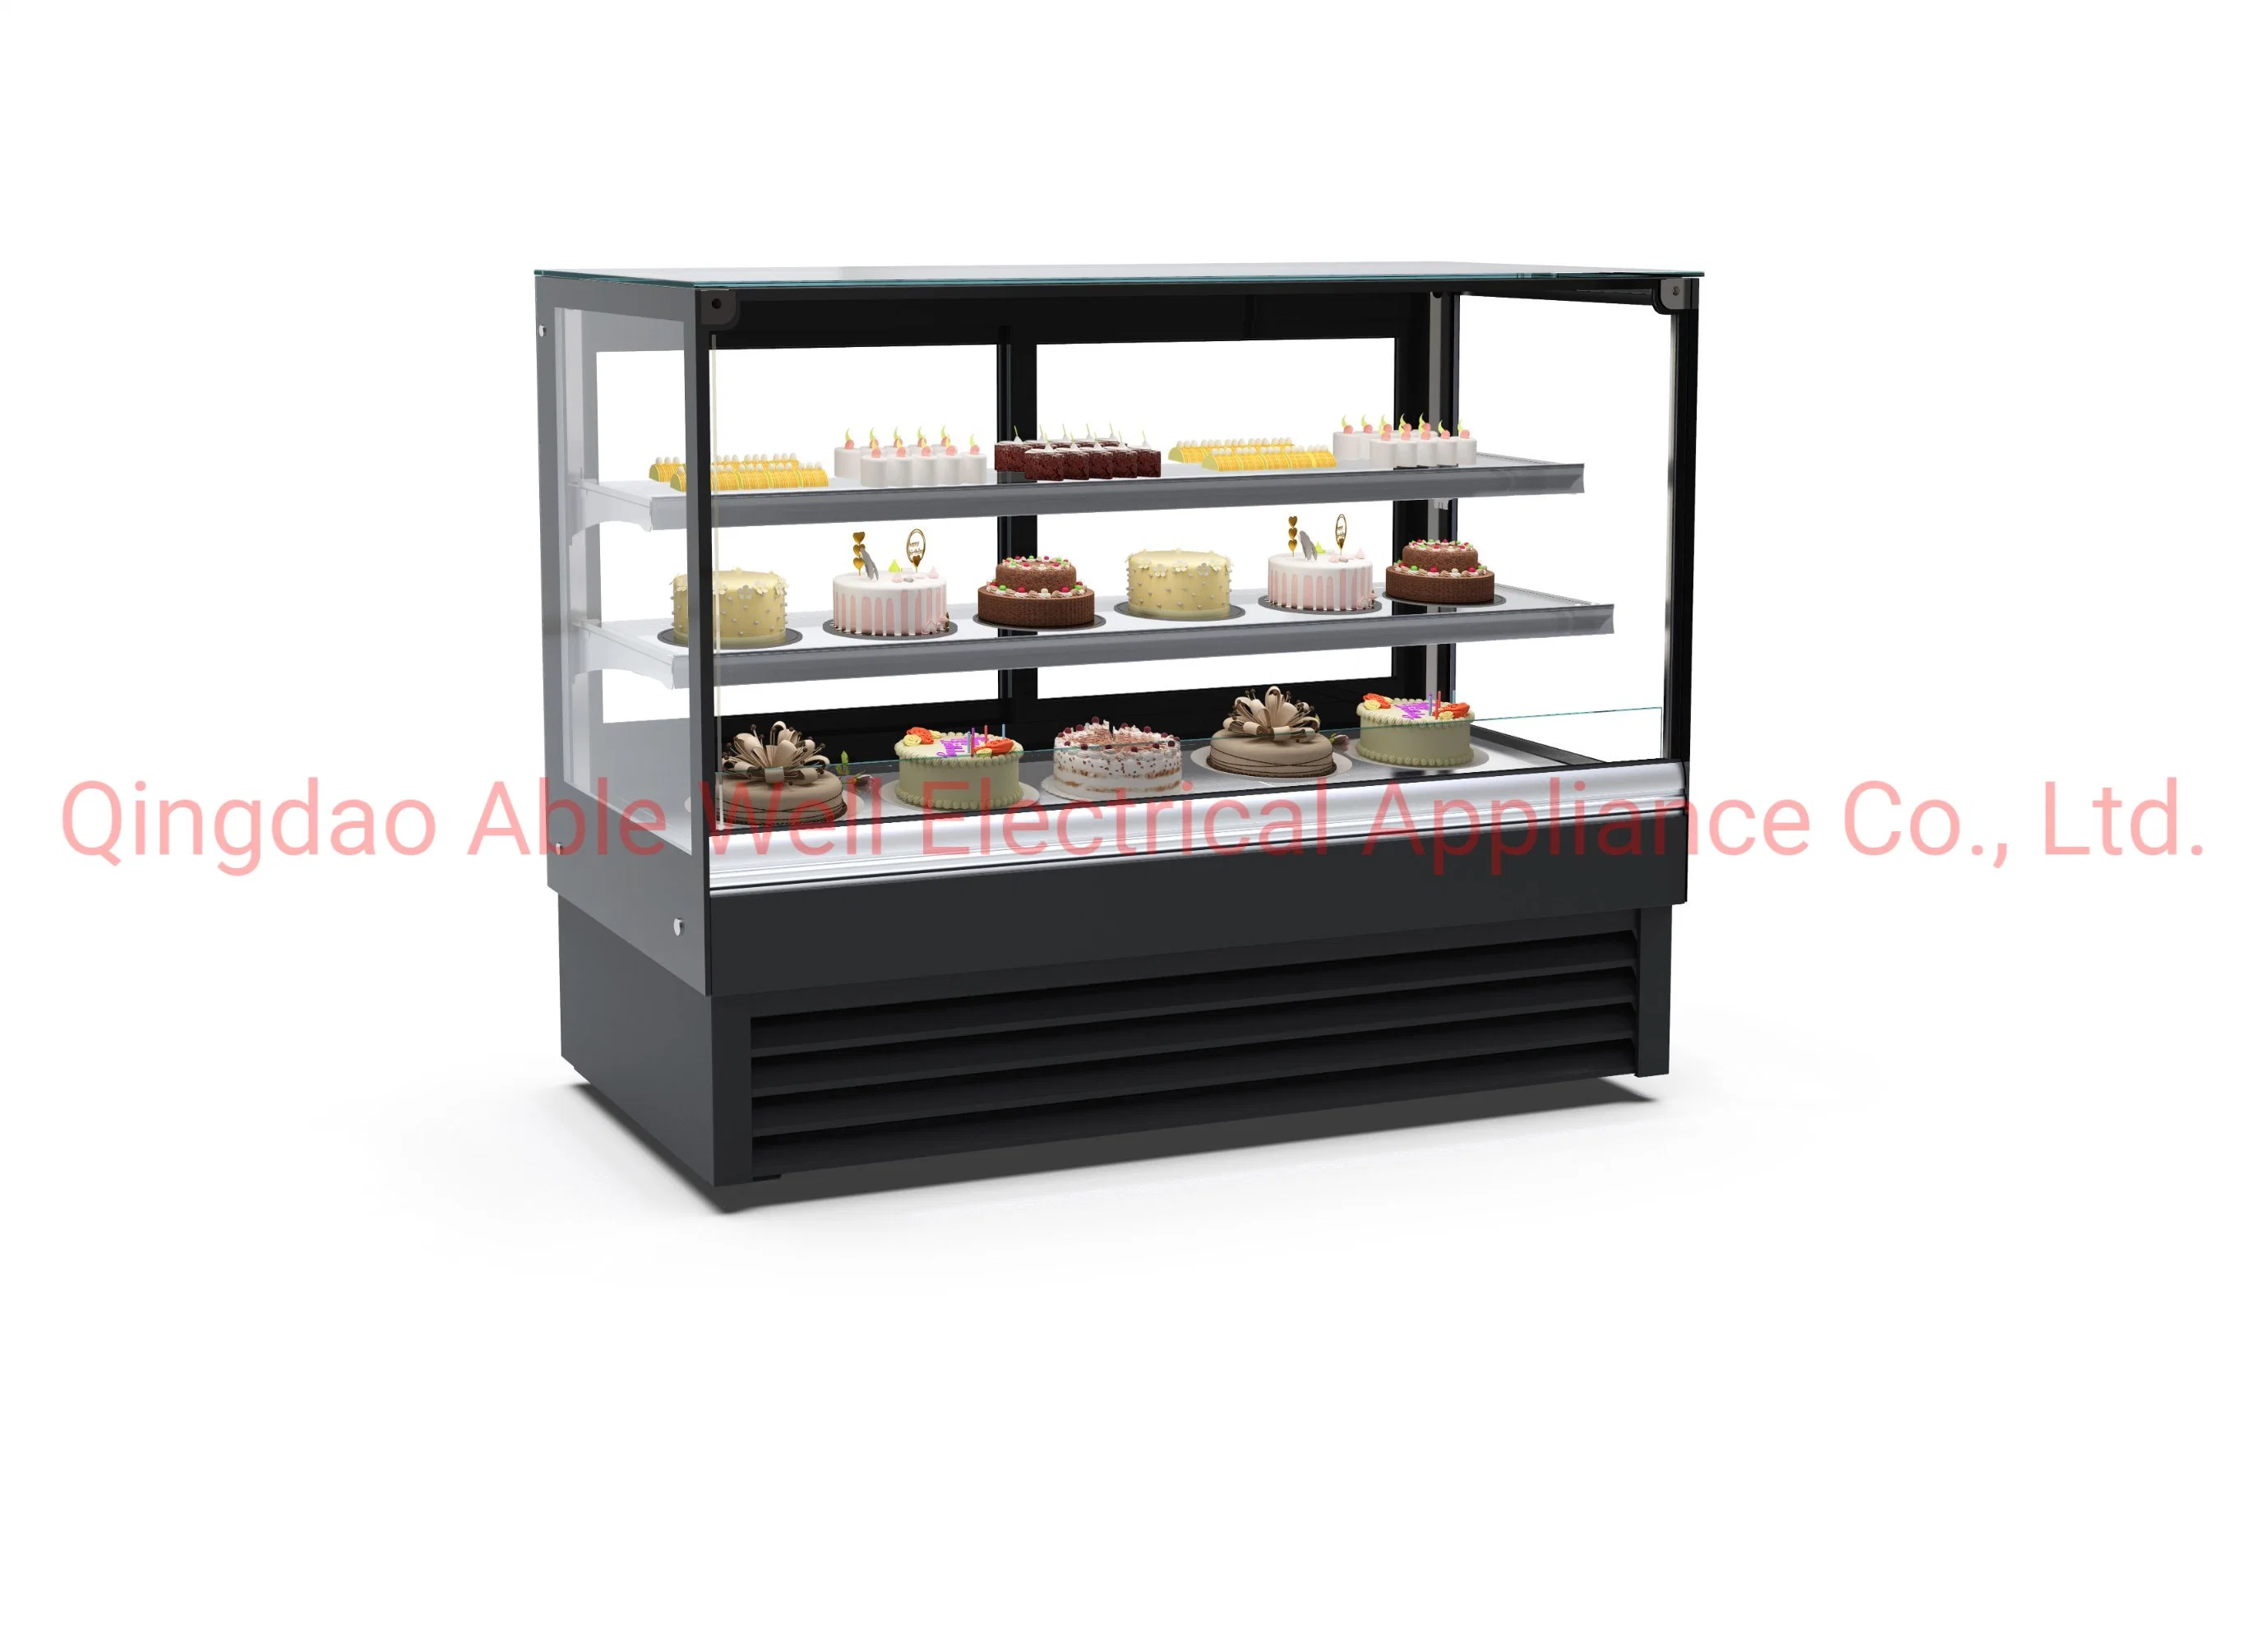 Bester Preis Bäckerei Kältemaschine Glas Gebogene Glas Kuchen Display Kühlschrank Zähler